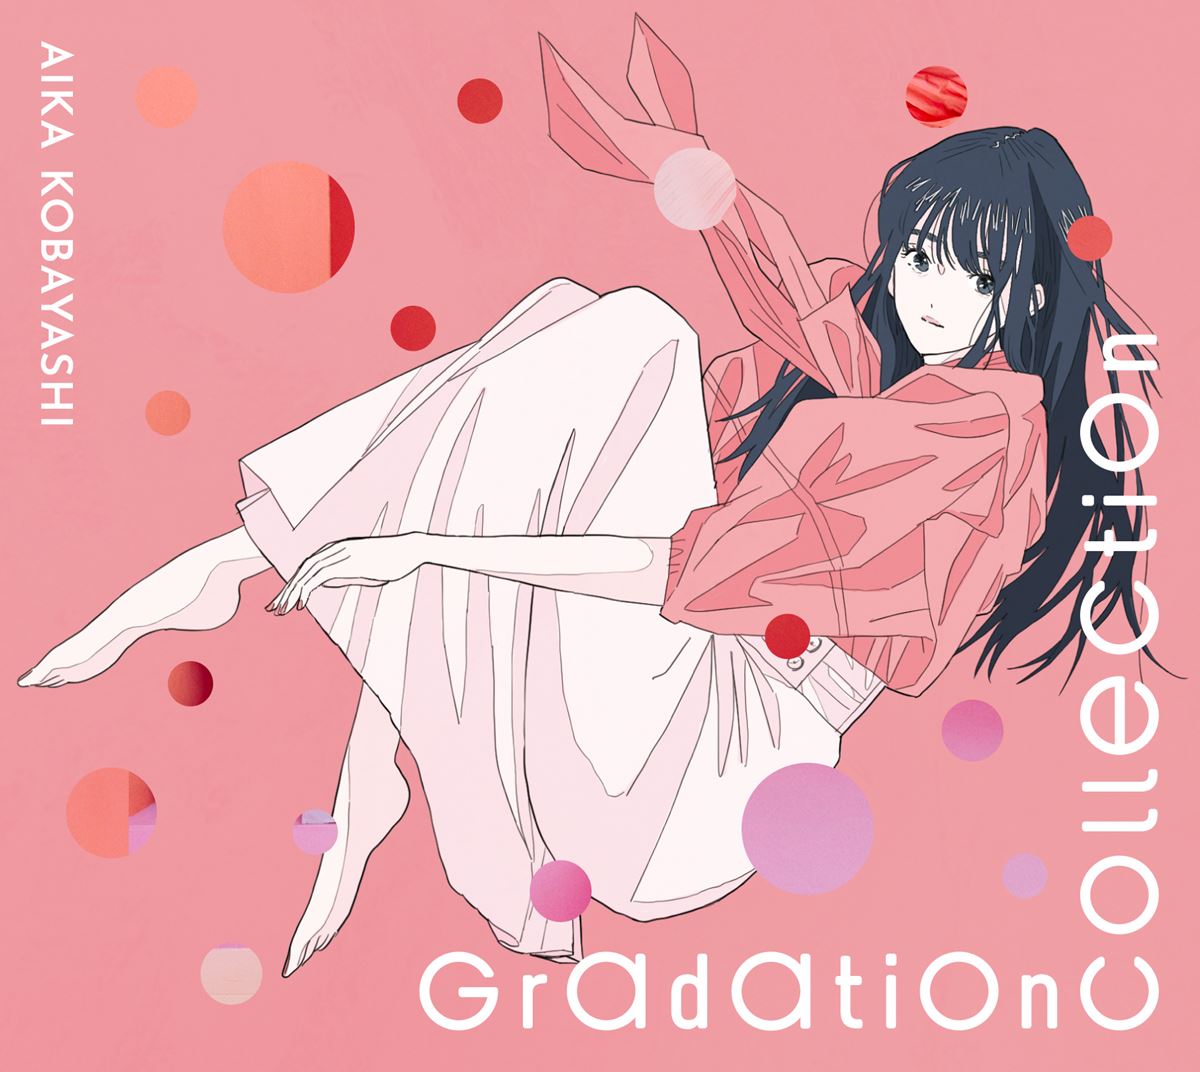 小林愛香『Gradation Collection』初回生産限定盤ジャケット